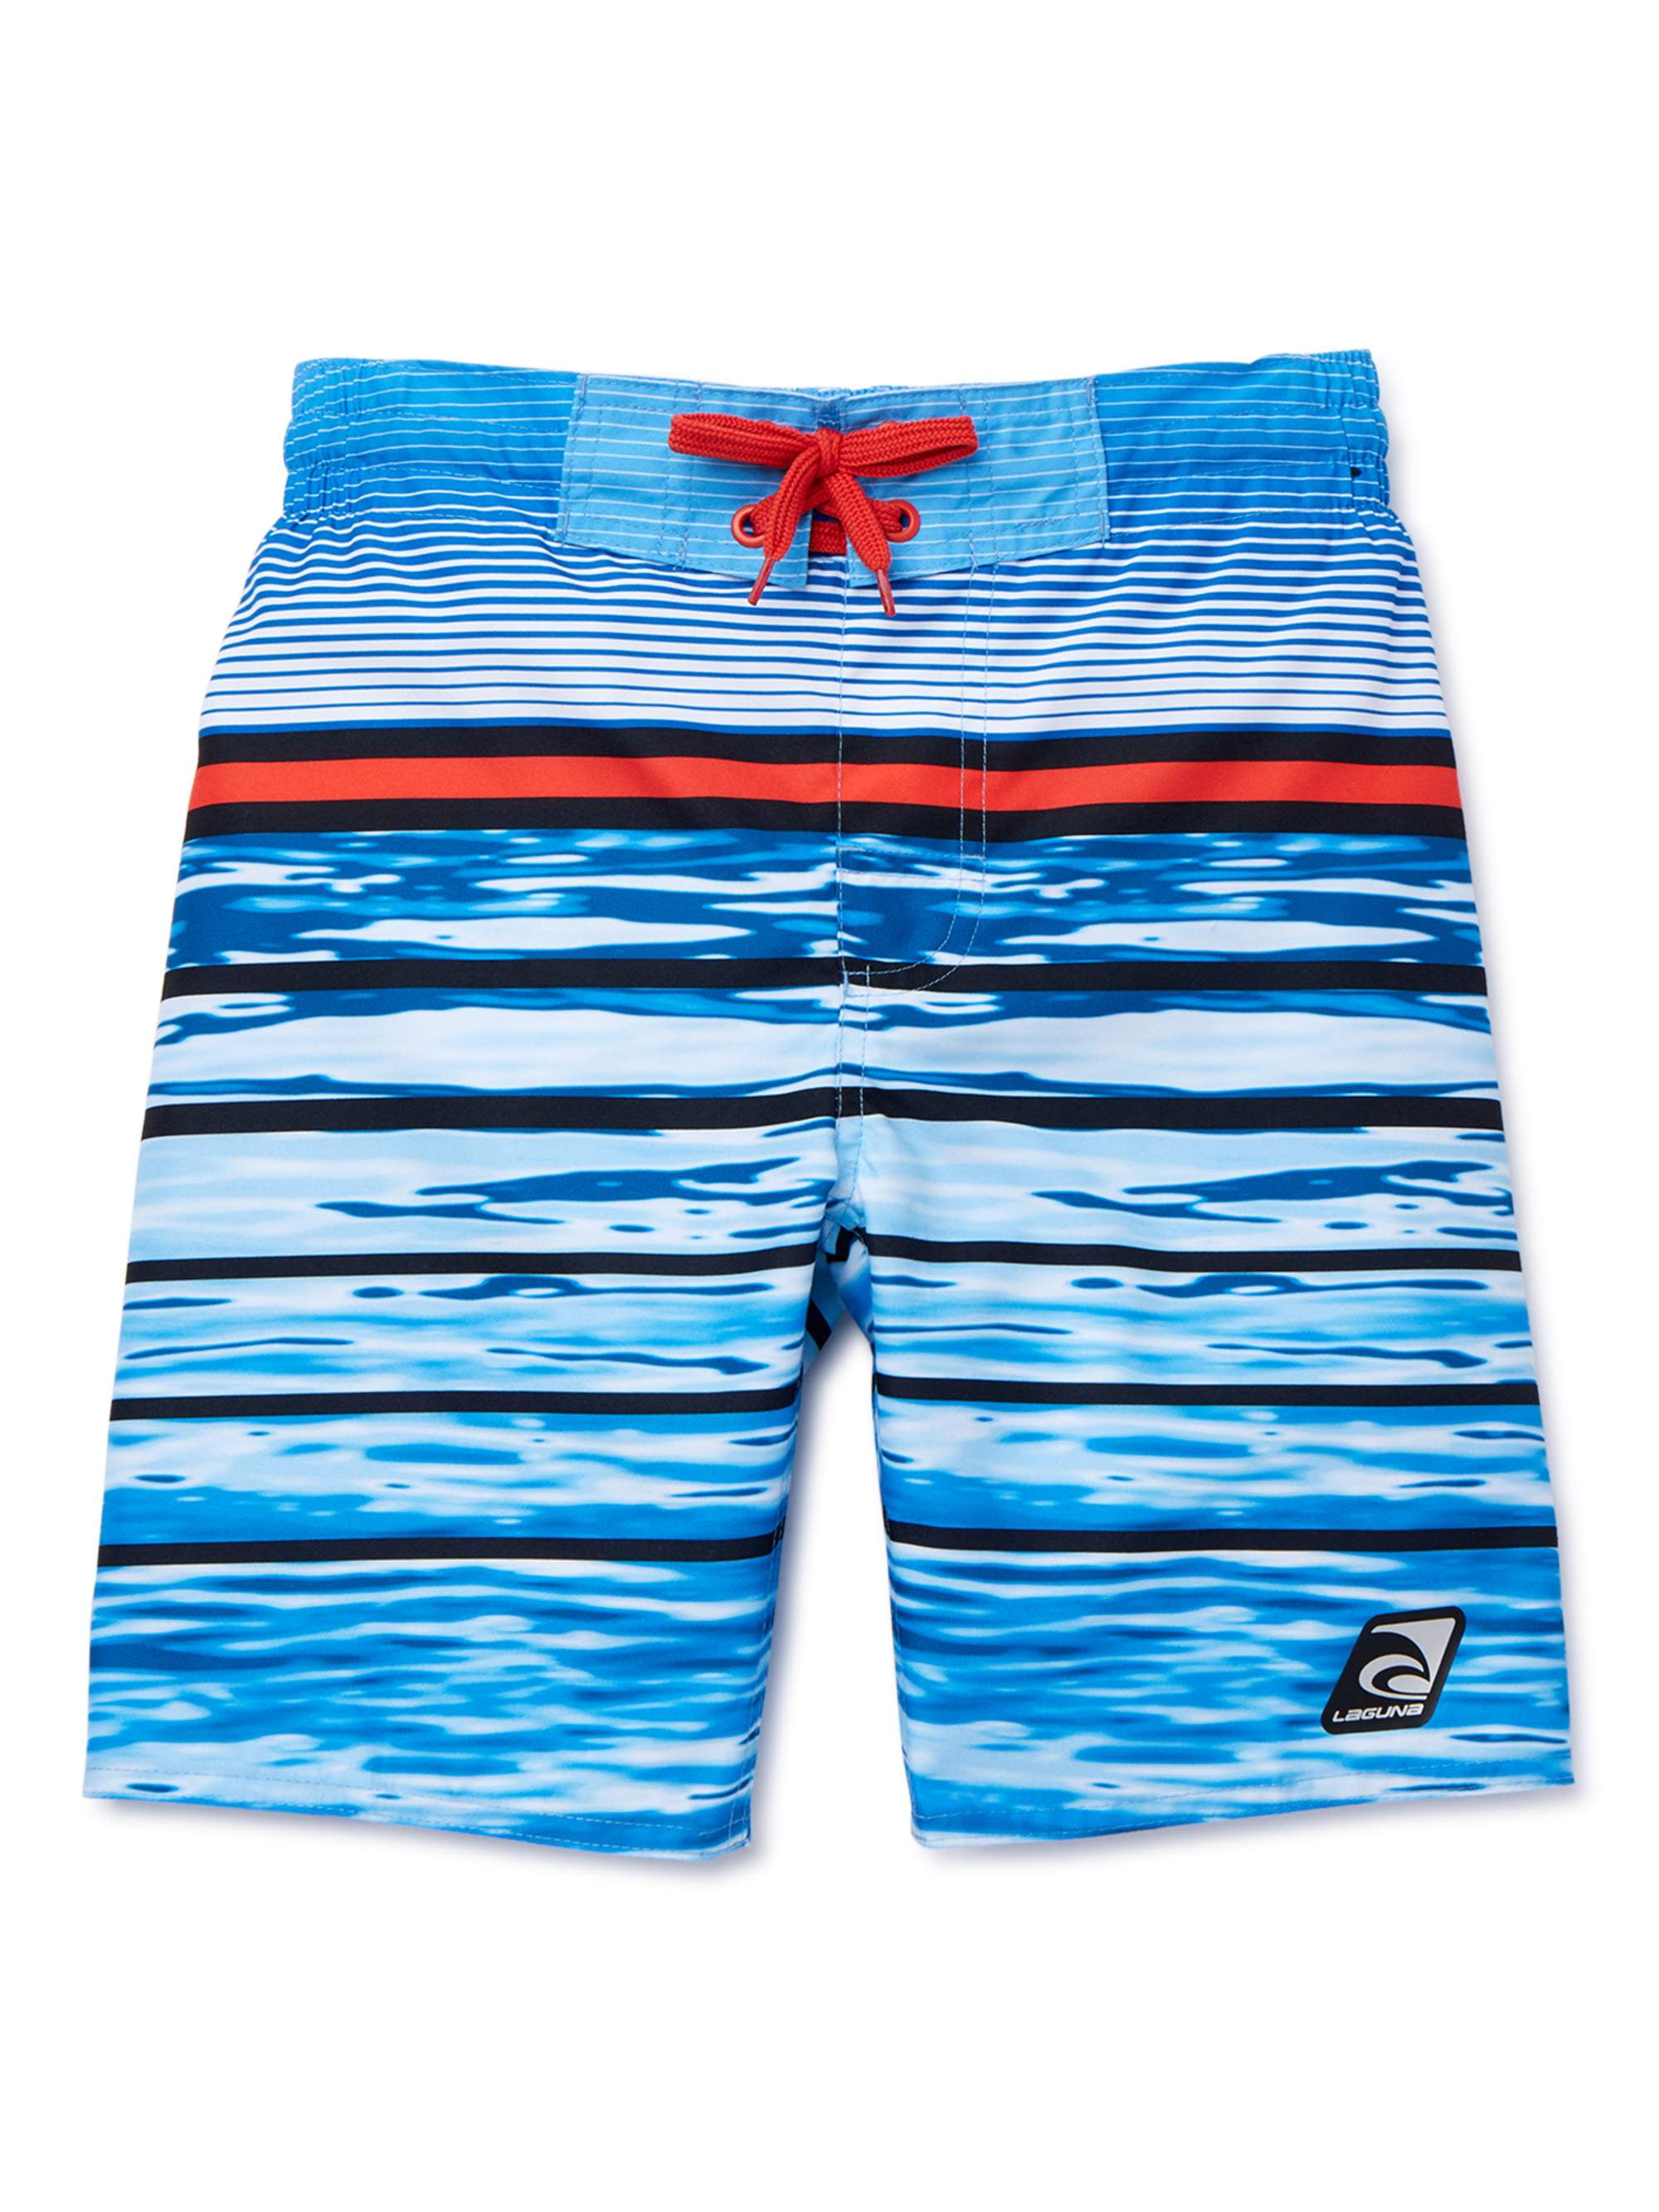 Laguna Boys Wave Print Swim Trunks with UPF 50, Sizes 8-20 - Walmart.com